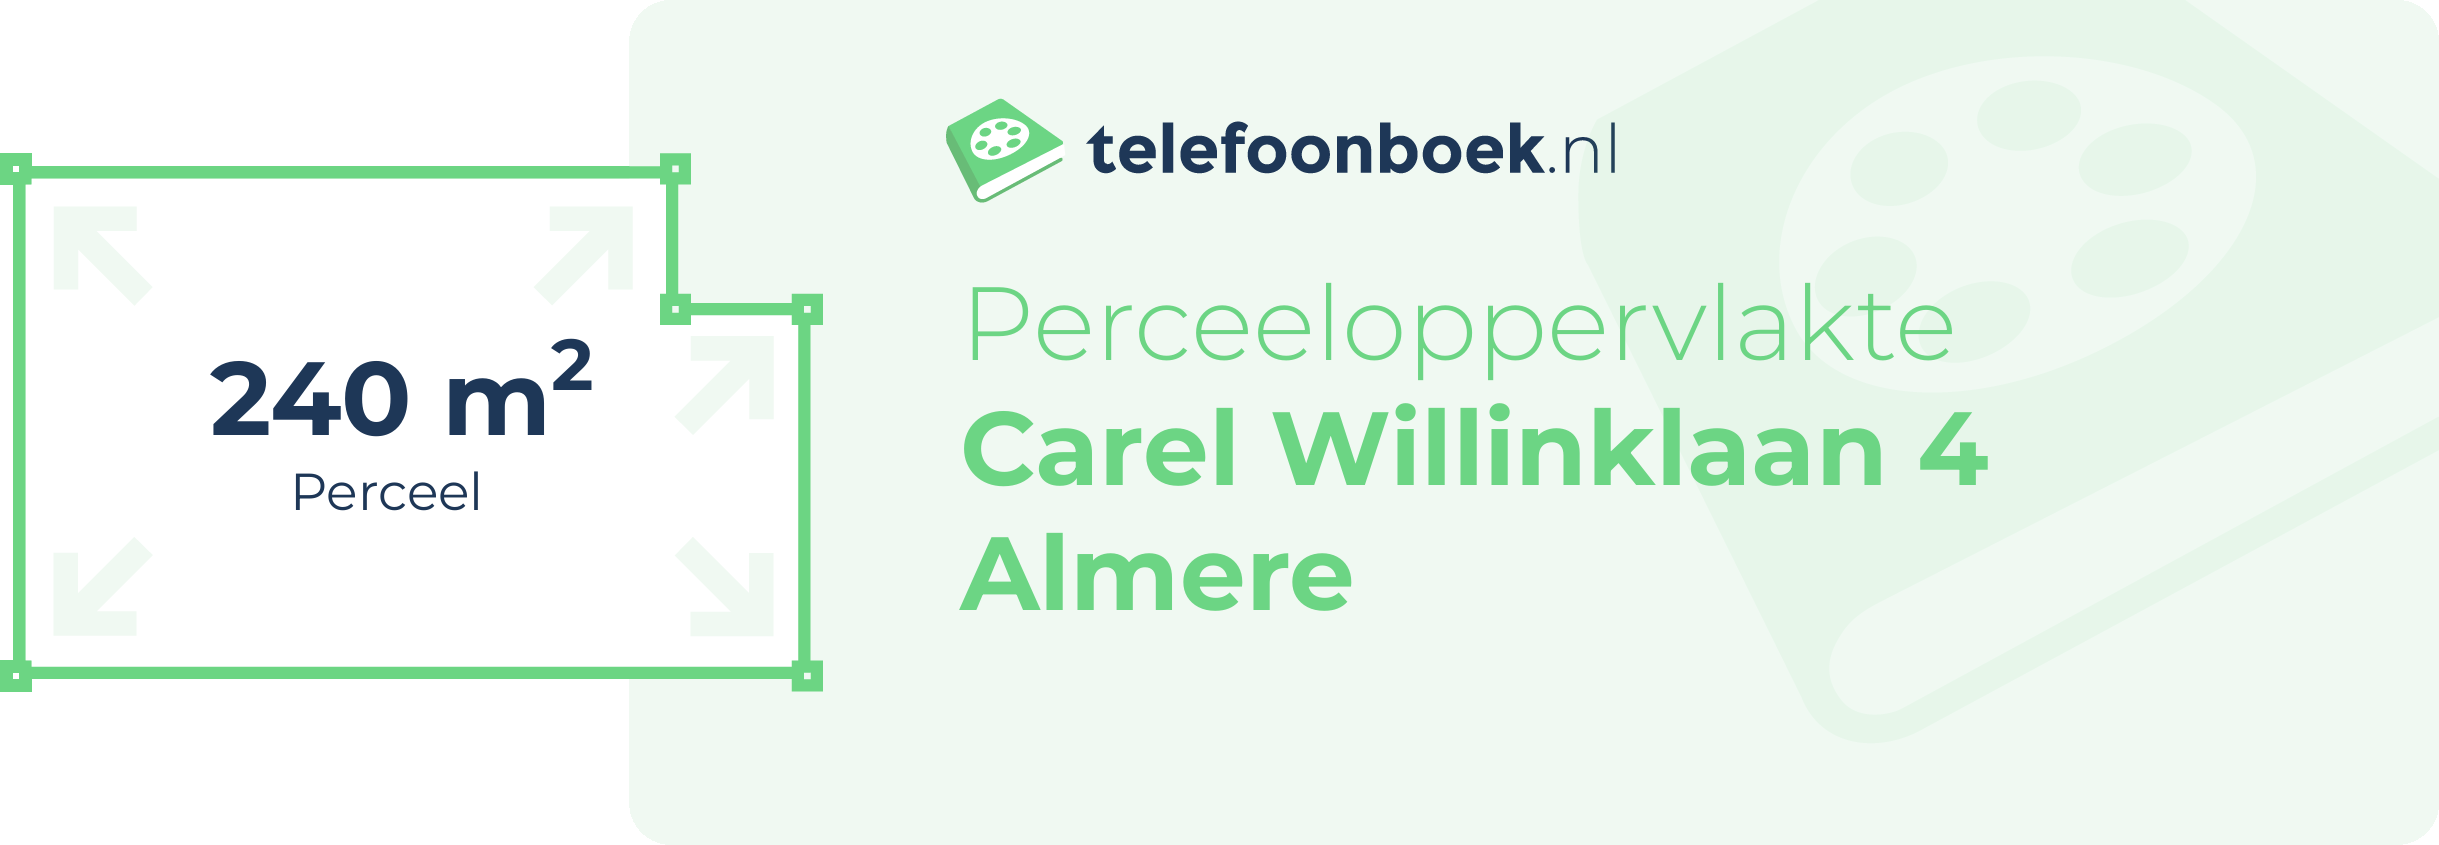 Perceeloppervlakte Carel Willinklaan 4 Almere